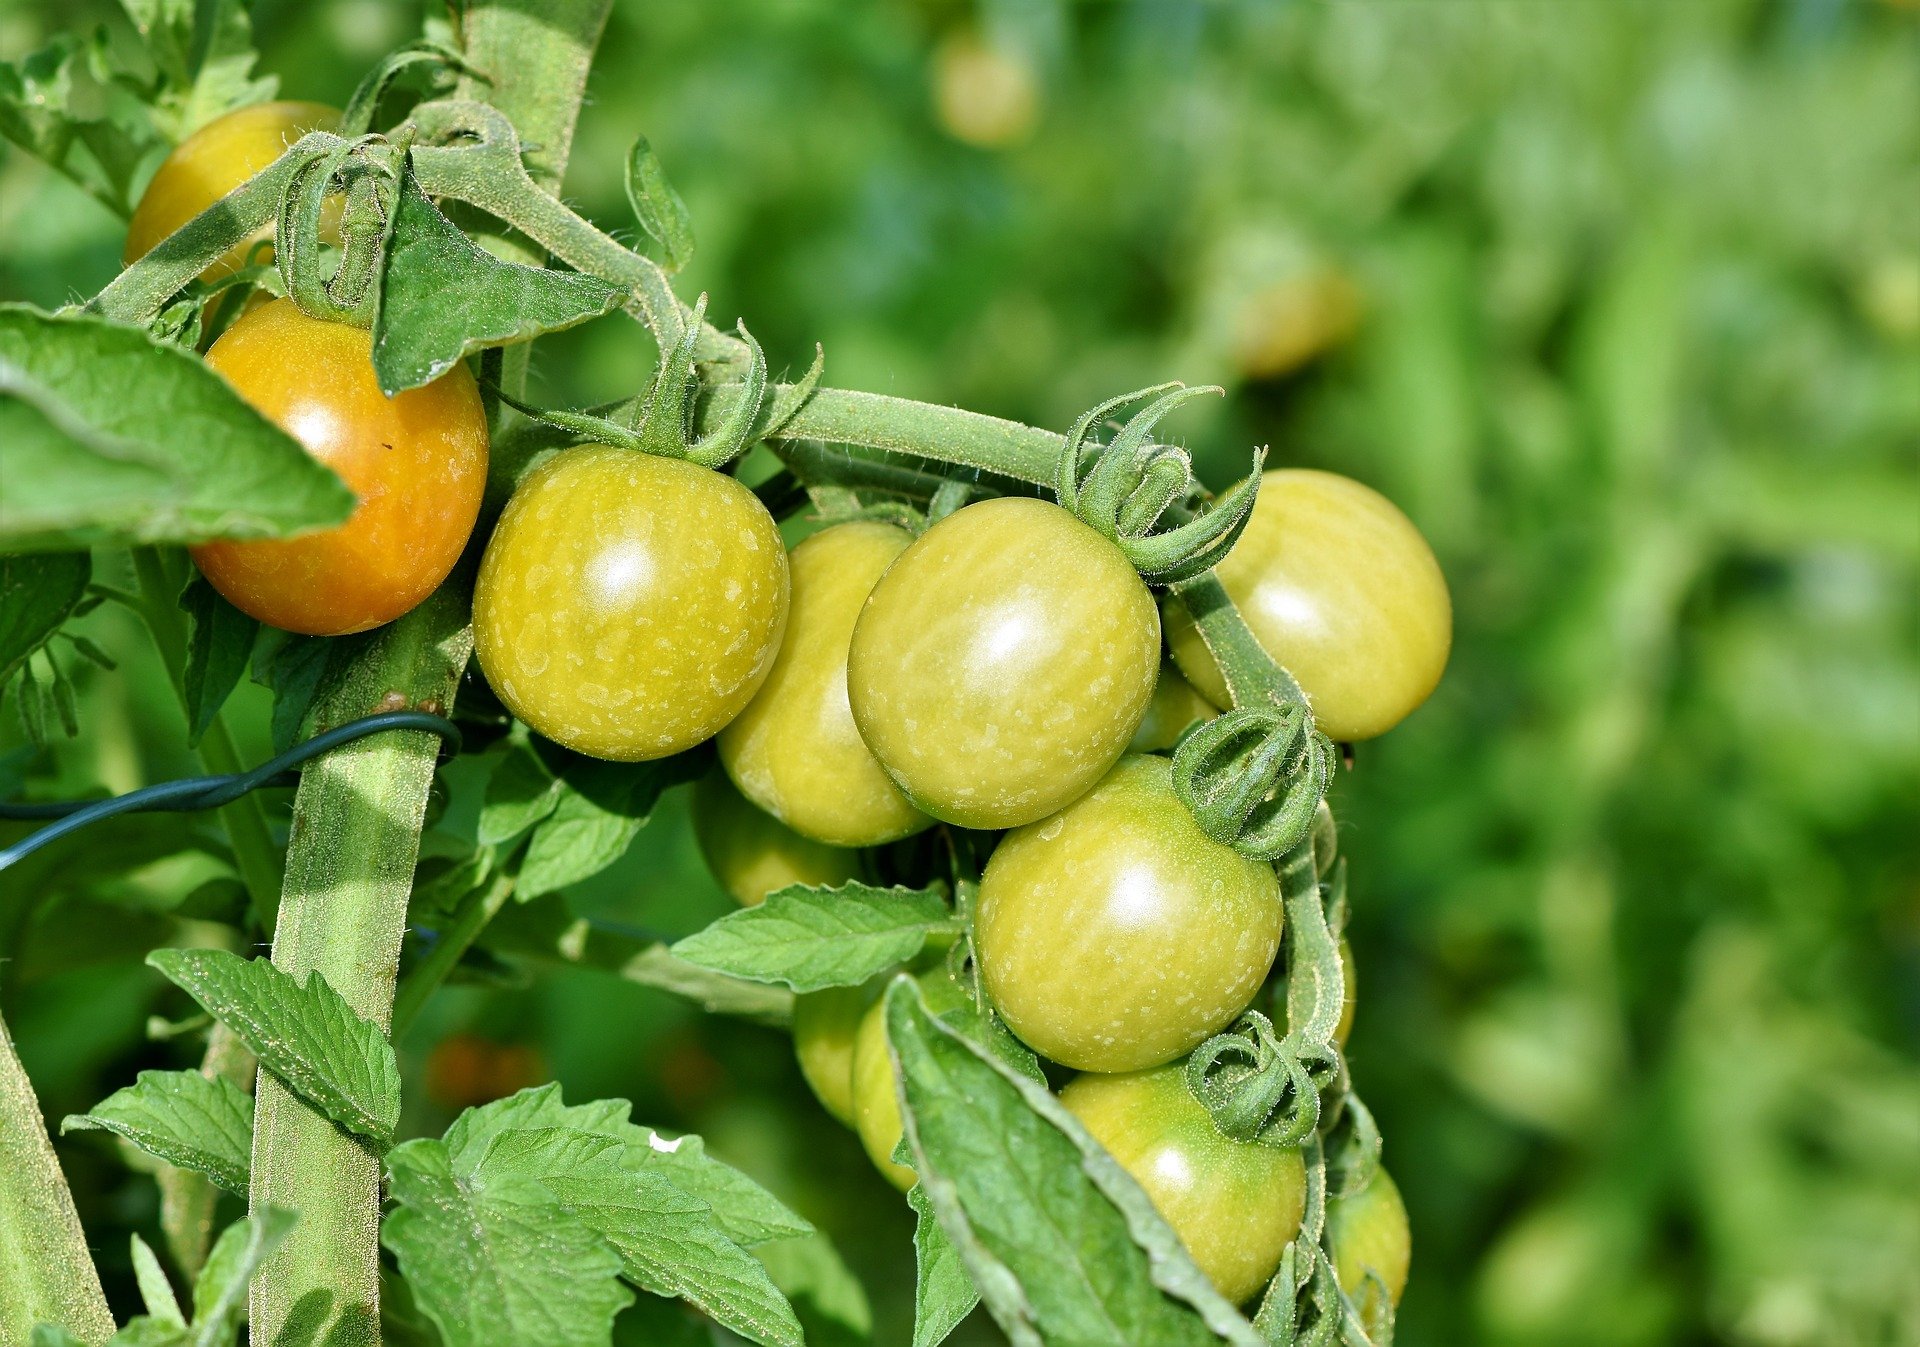 tomatoes 3696968 1920.jpg?resize=412,232 - La propagation d'un nouveau virus menace les productions de tomates, poivrons, aubergines et autres plantes